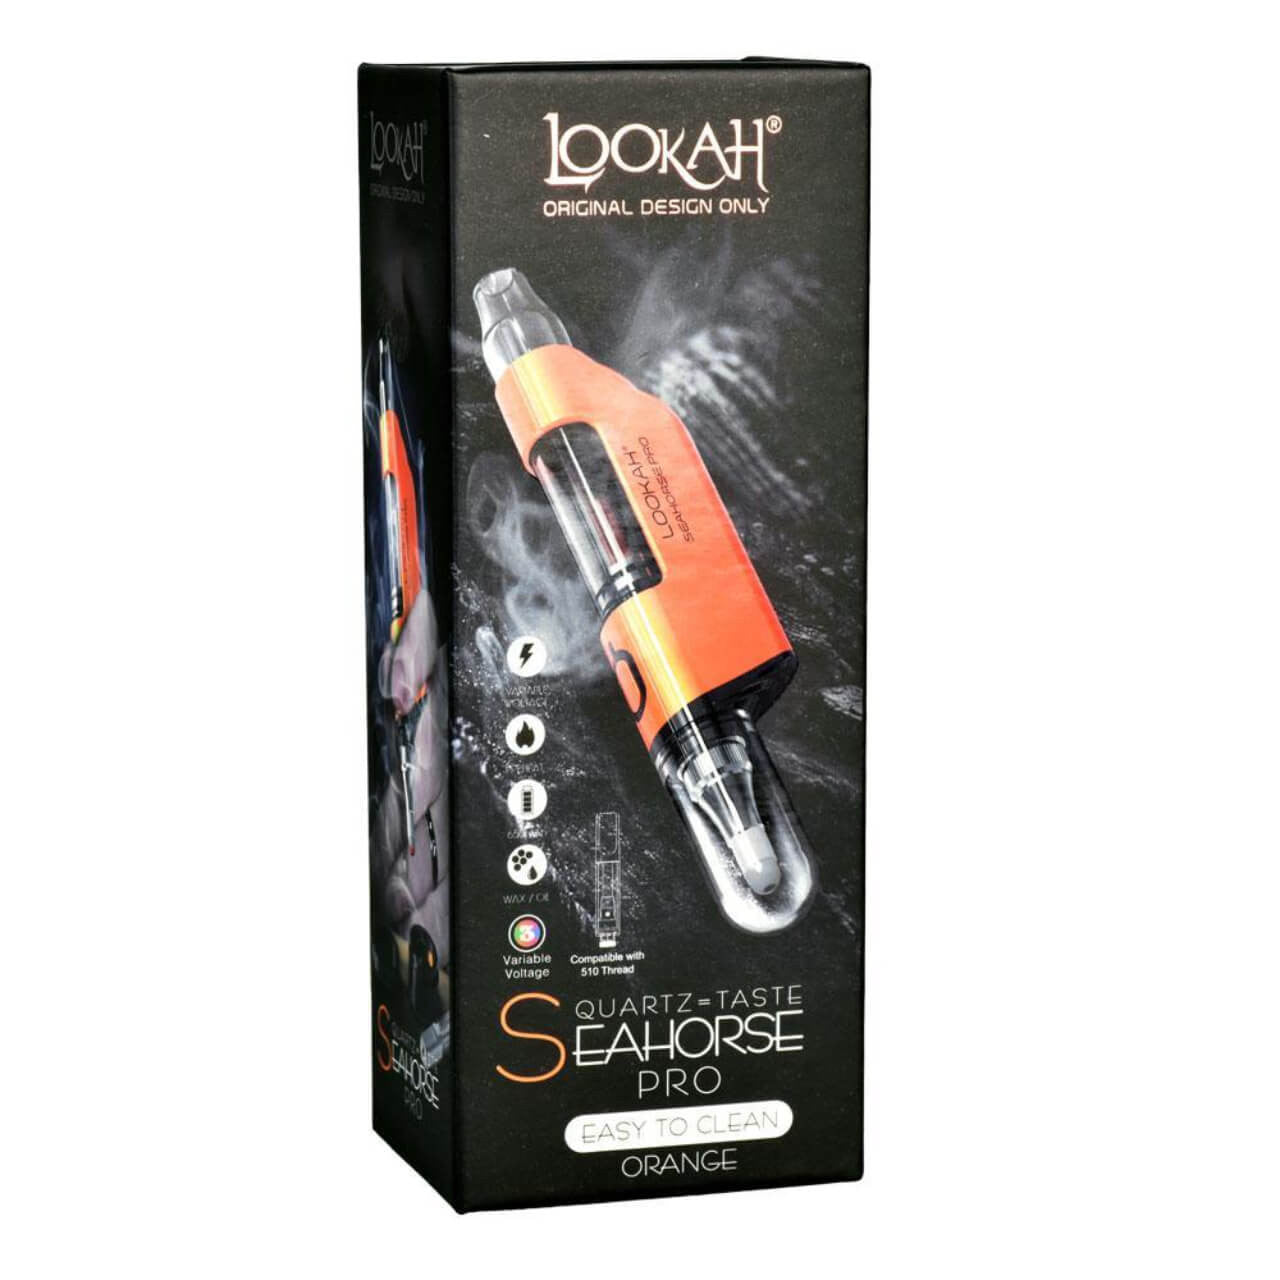 Lookah Seahorse Pro Plus Dab Pen Vaporizer